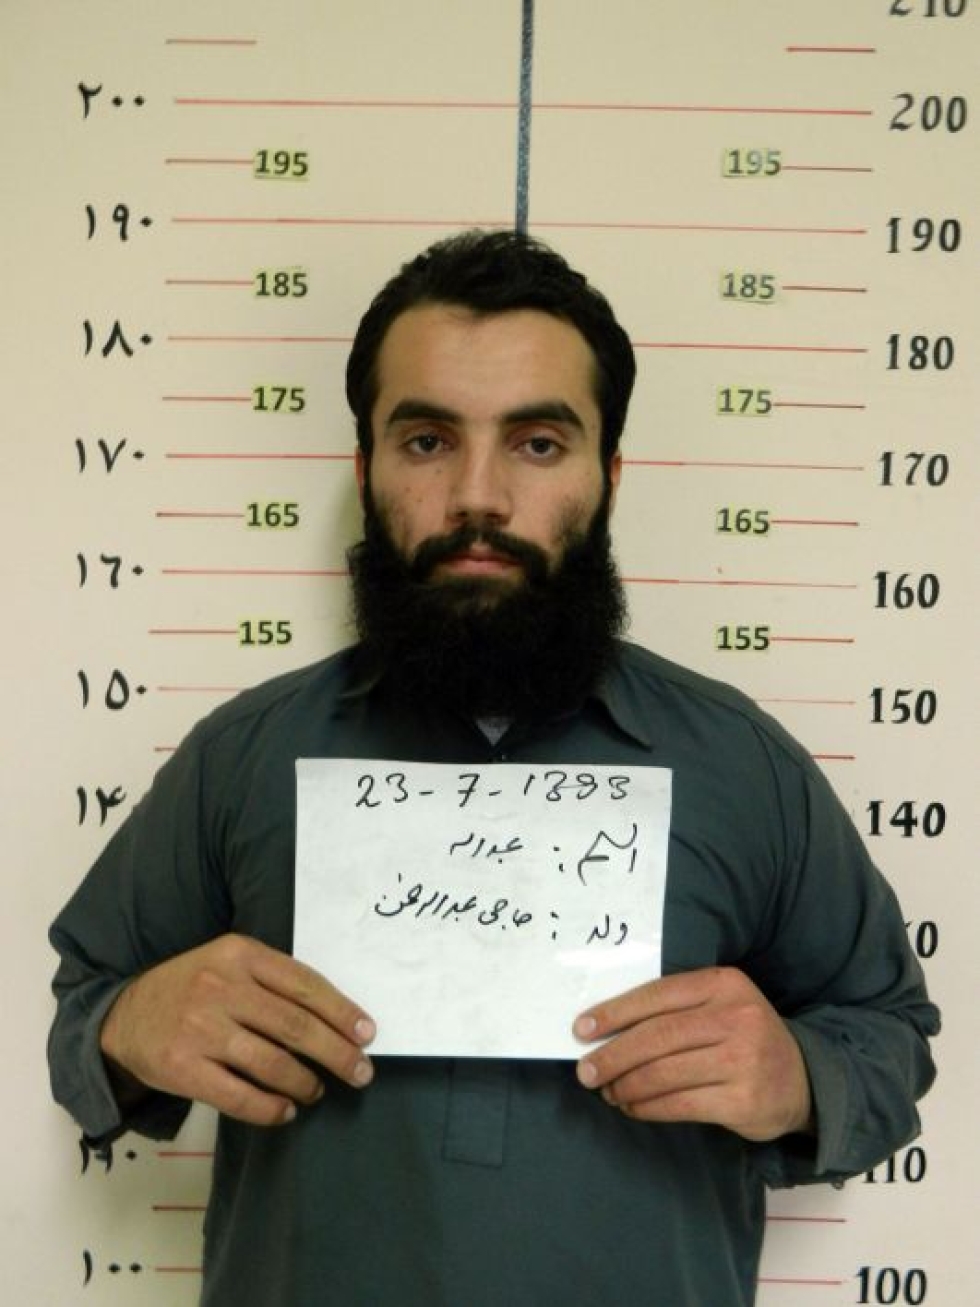 Yksi vapautetuista on Anas Haqqani, jonka isoveli Sirajuddin Haqqani kuuluu Taleban-liikkeen johtohahmoihin ja johtaa militanttia Haqqani-verkostoa. Afganistanin viranomaisten mukaan myös Anas Haqqani on tärkeässä roolissa verkostossa. LEHTIKUVA/AFP